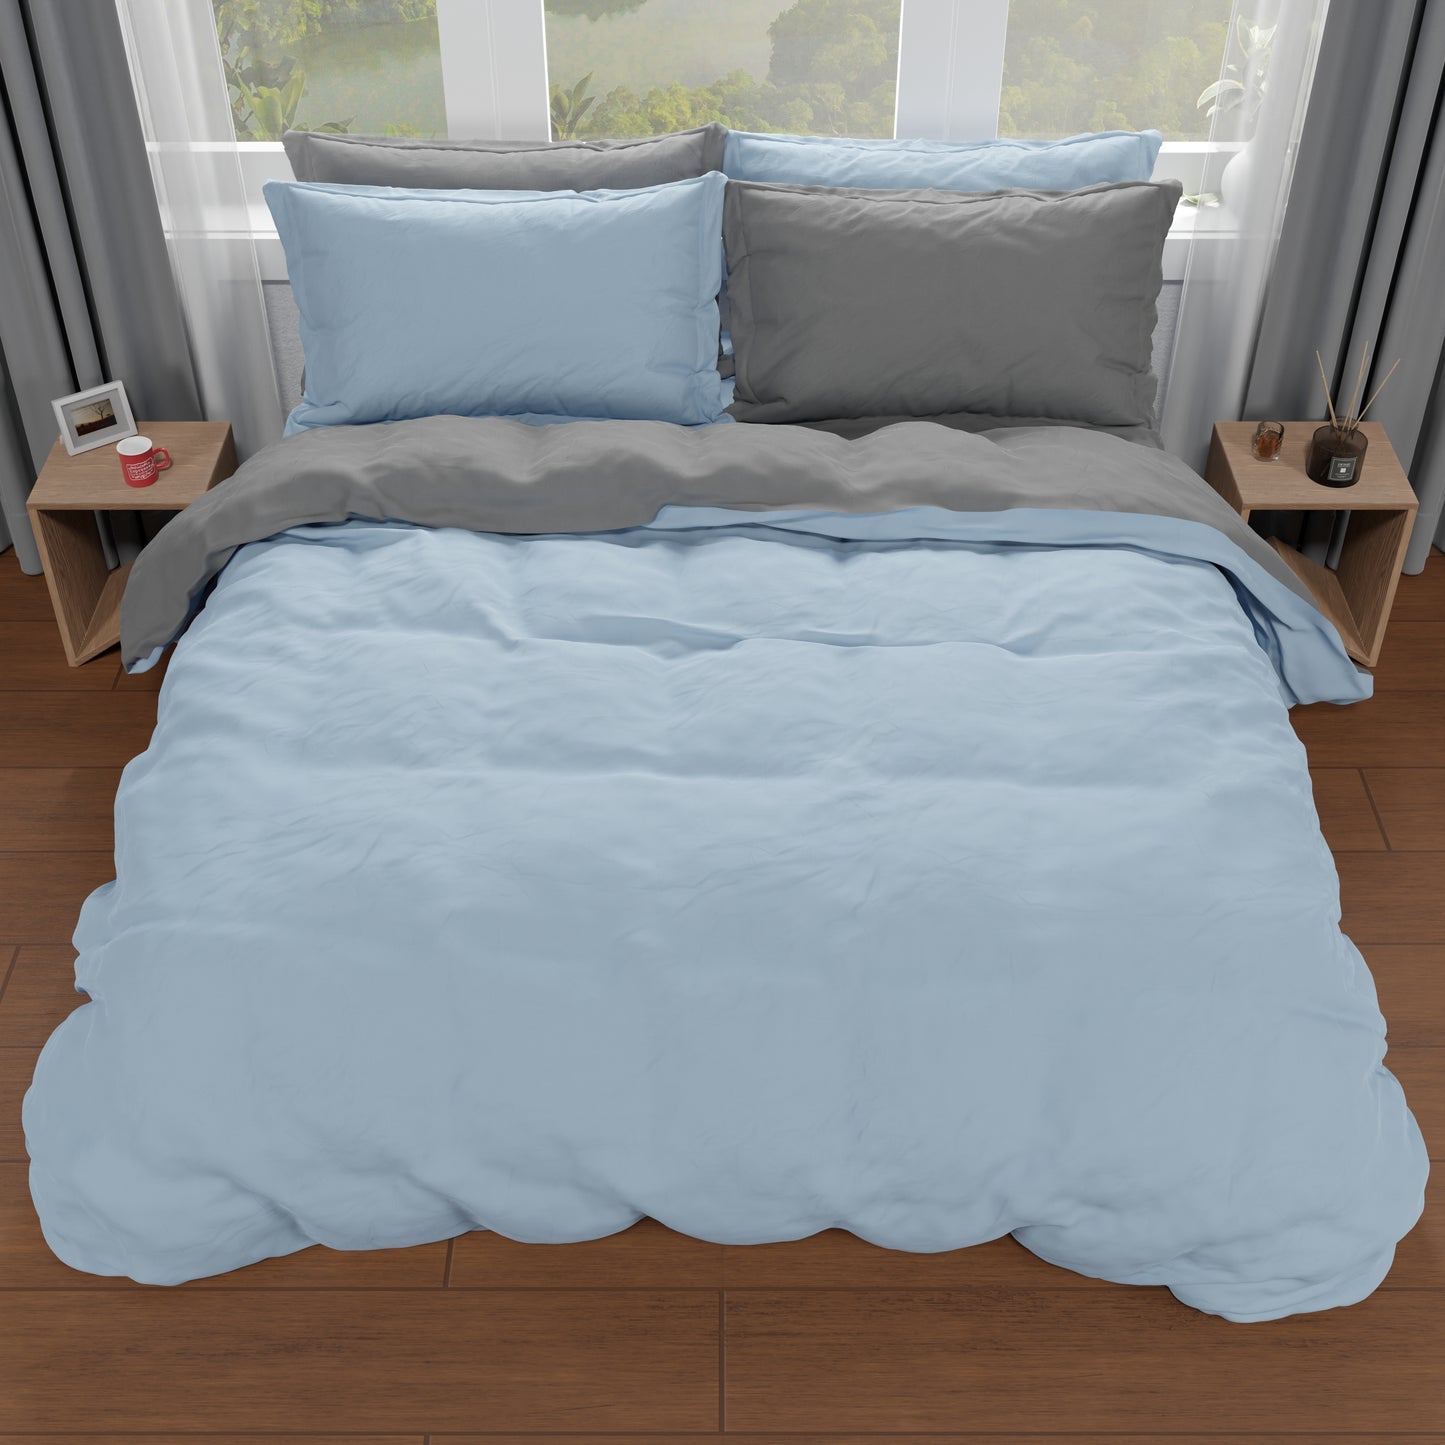 Double Duvet Cover, Duvet Cover and Pillowcases, Light Blue/Dark Grey